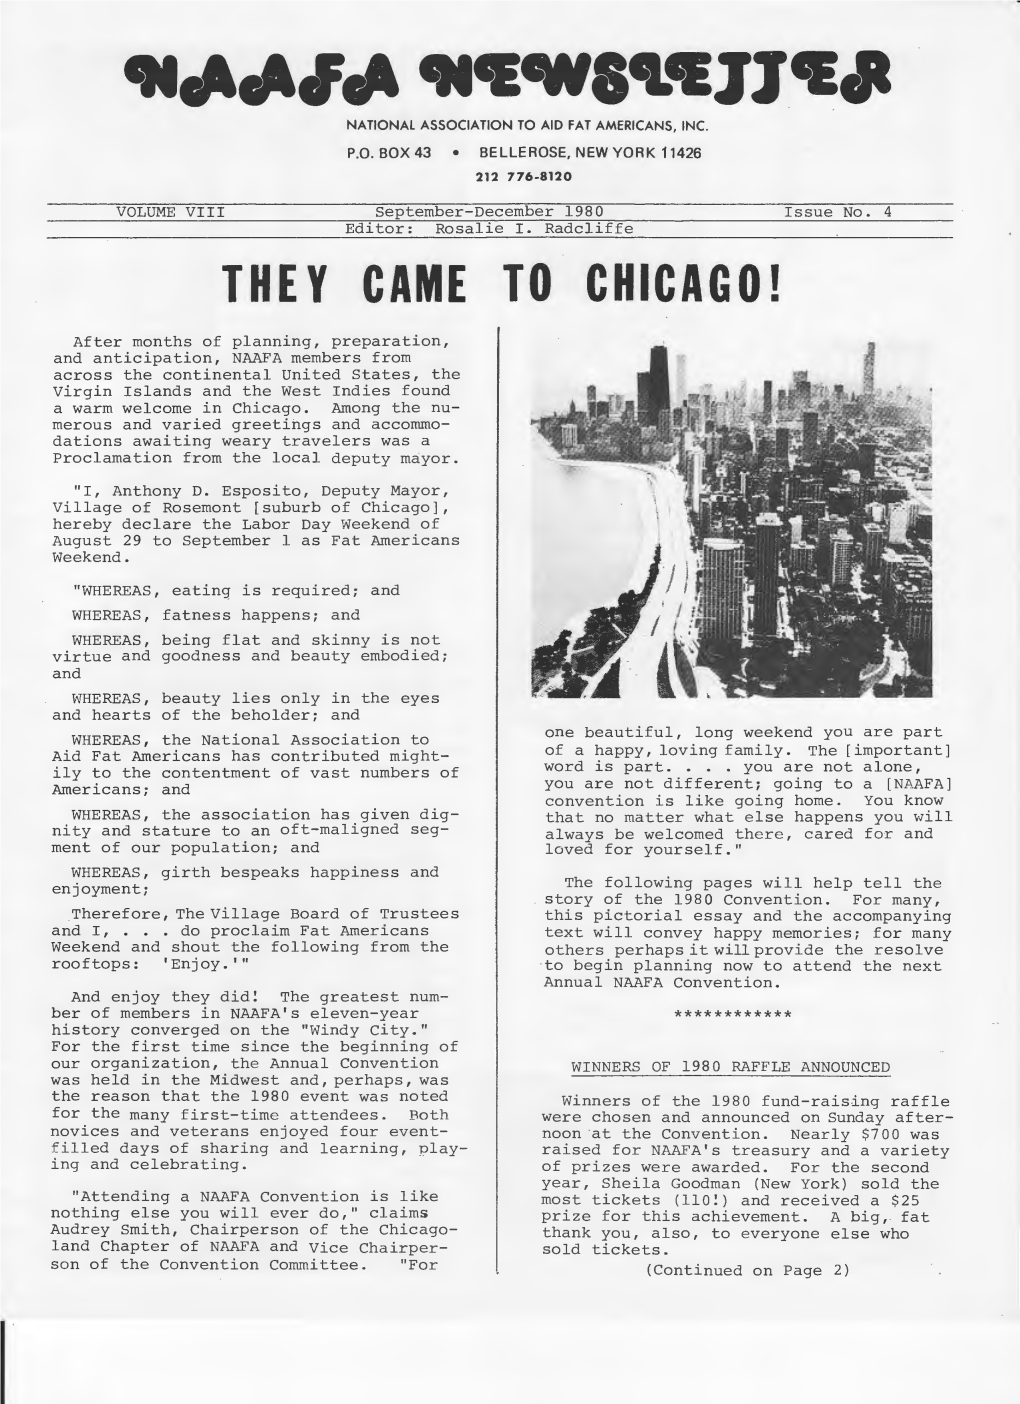 December 1980 Newsletter